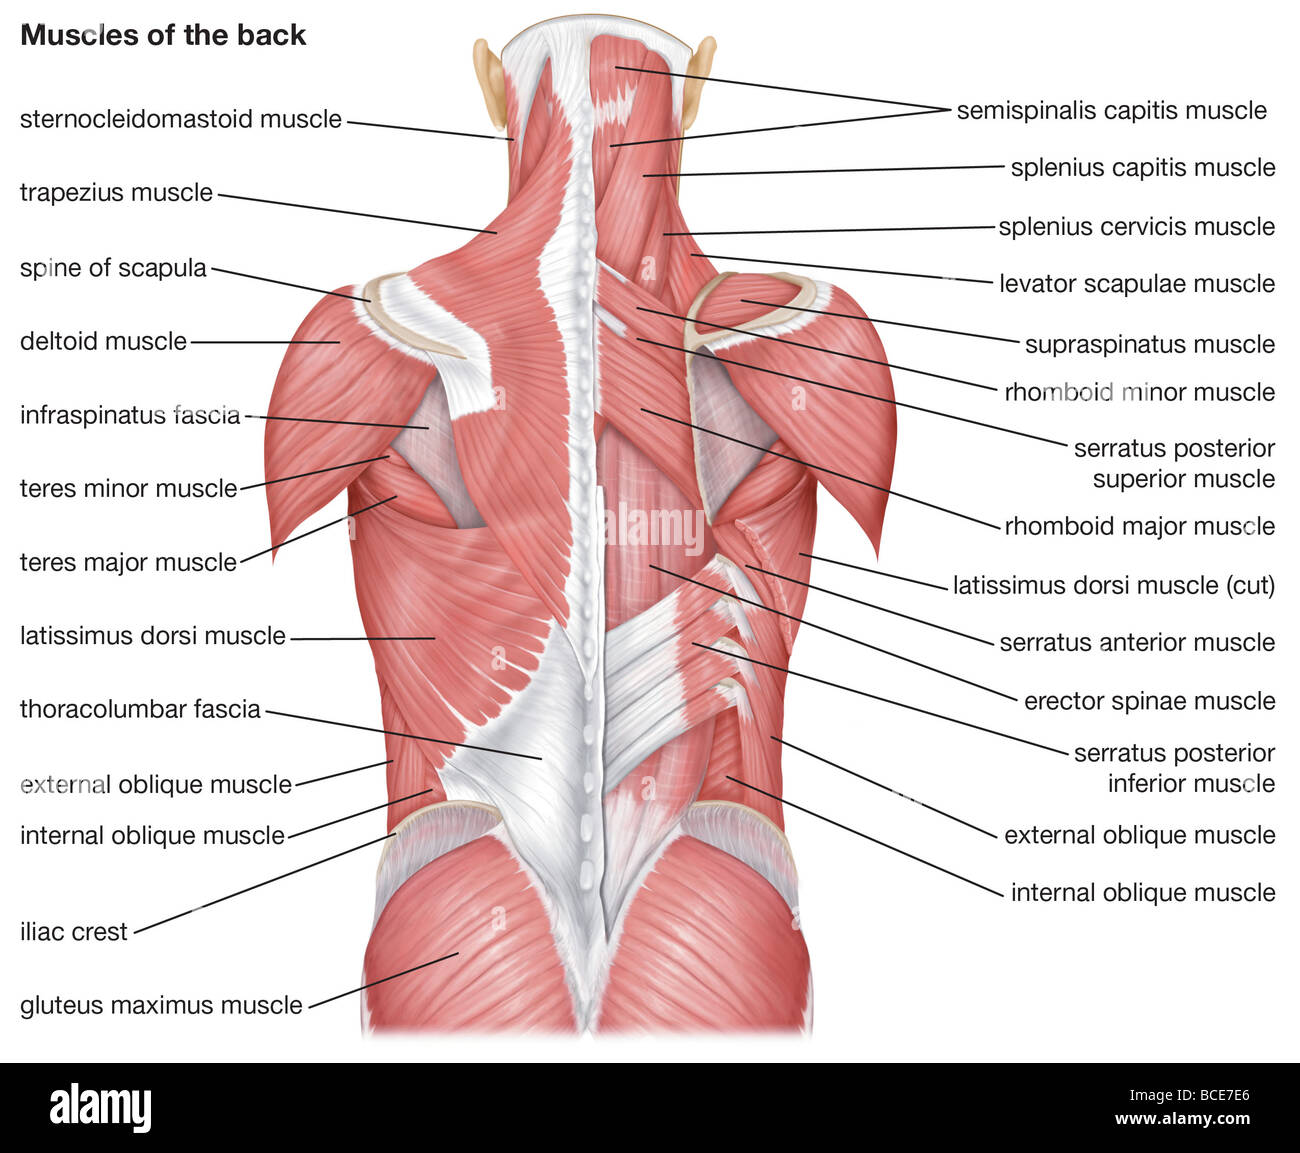 Les muscles du dos Photo Stock - Alamy